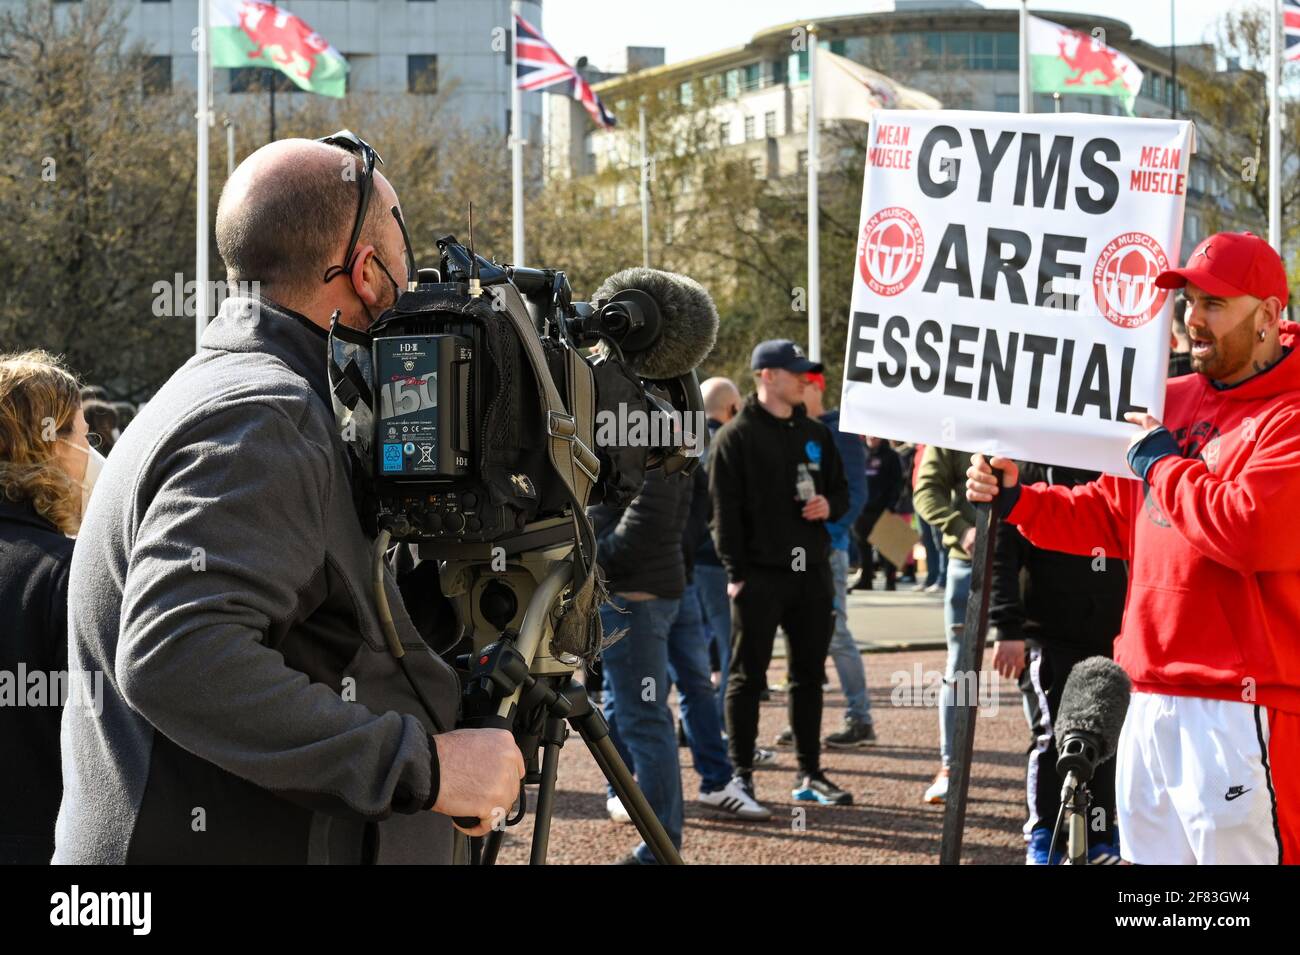 Cardiff, pays de Galles - avril 2021 : l'équipe de caméras de télévision filme et interviewe une personne avec un grand panneau lors d'une manifestation contre le verrouillage des gymnases. Banque D'Images